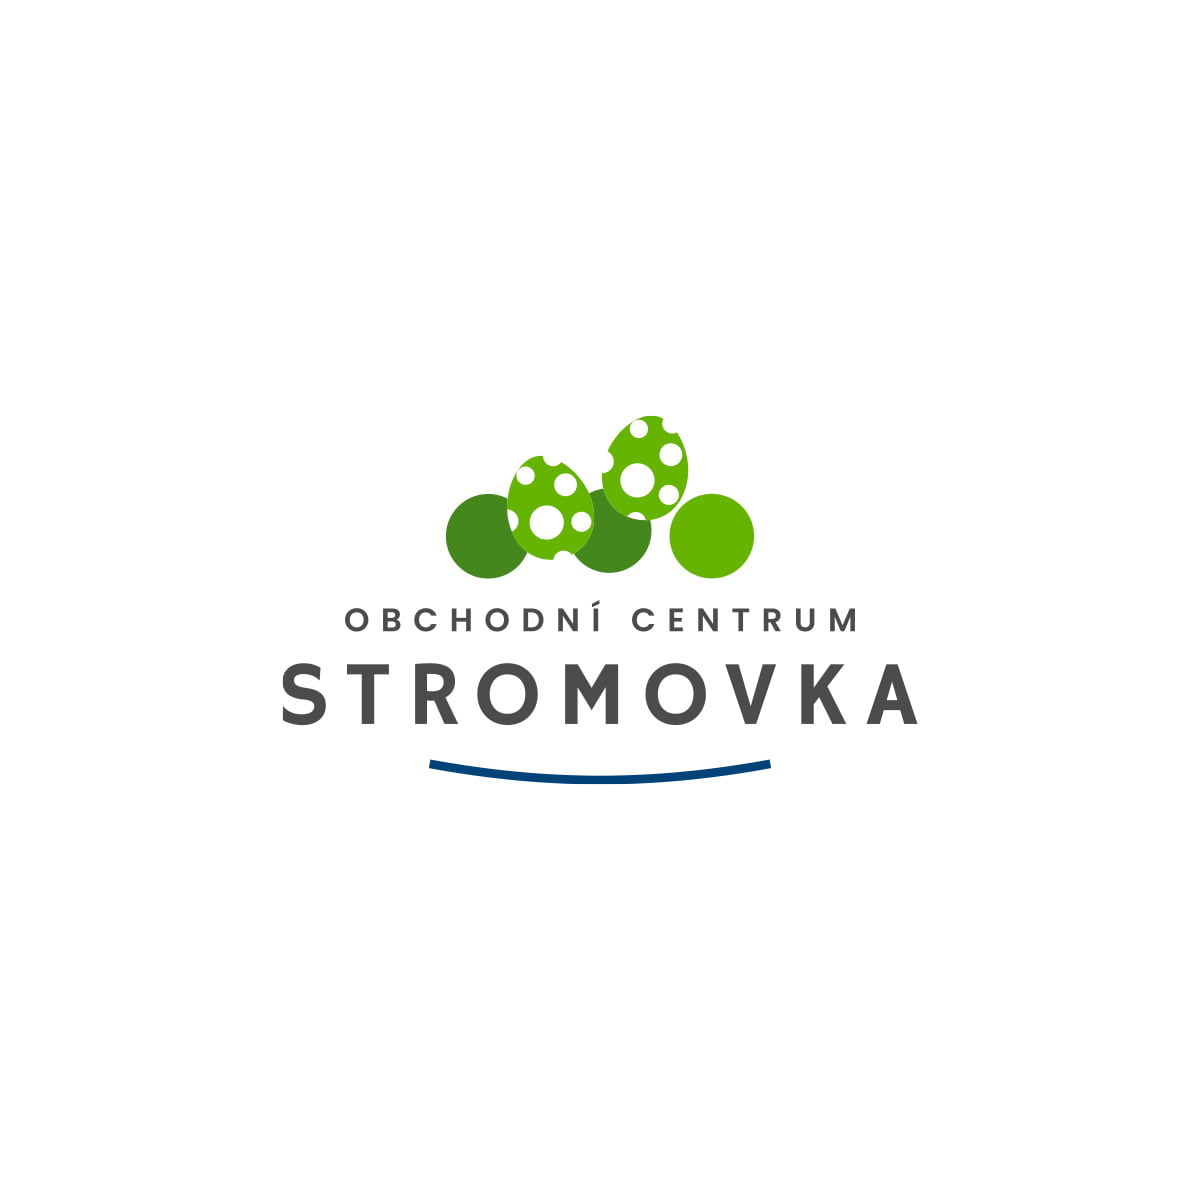 Stromovka_LOGO_Svidesign_01_M